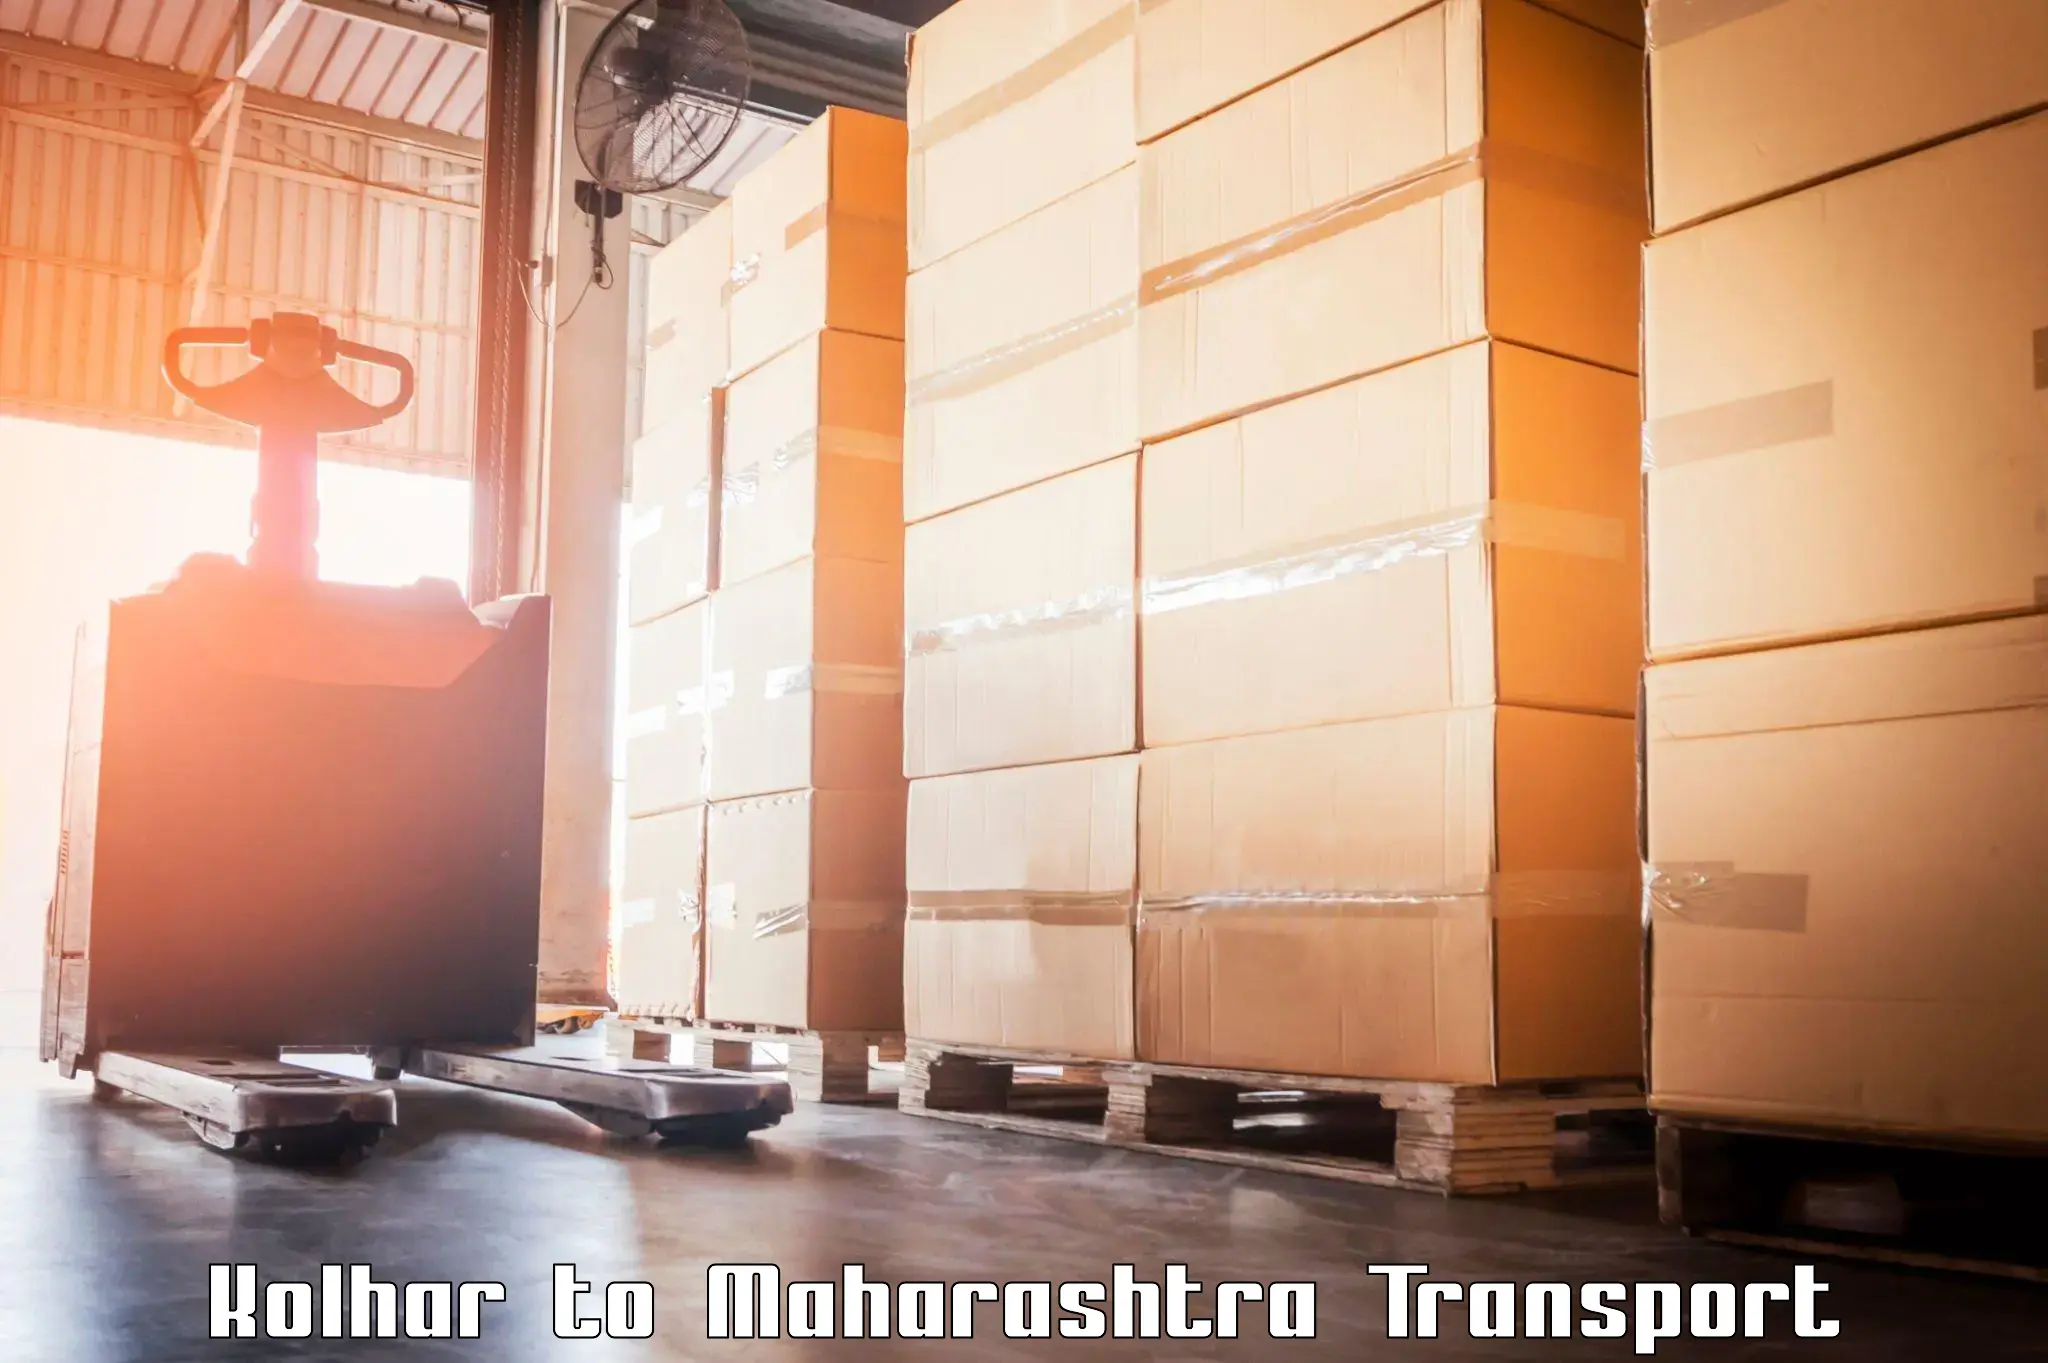 Commercial transport service Kolhar to Chinchbunder